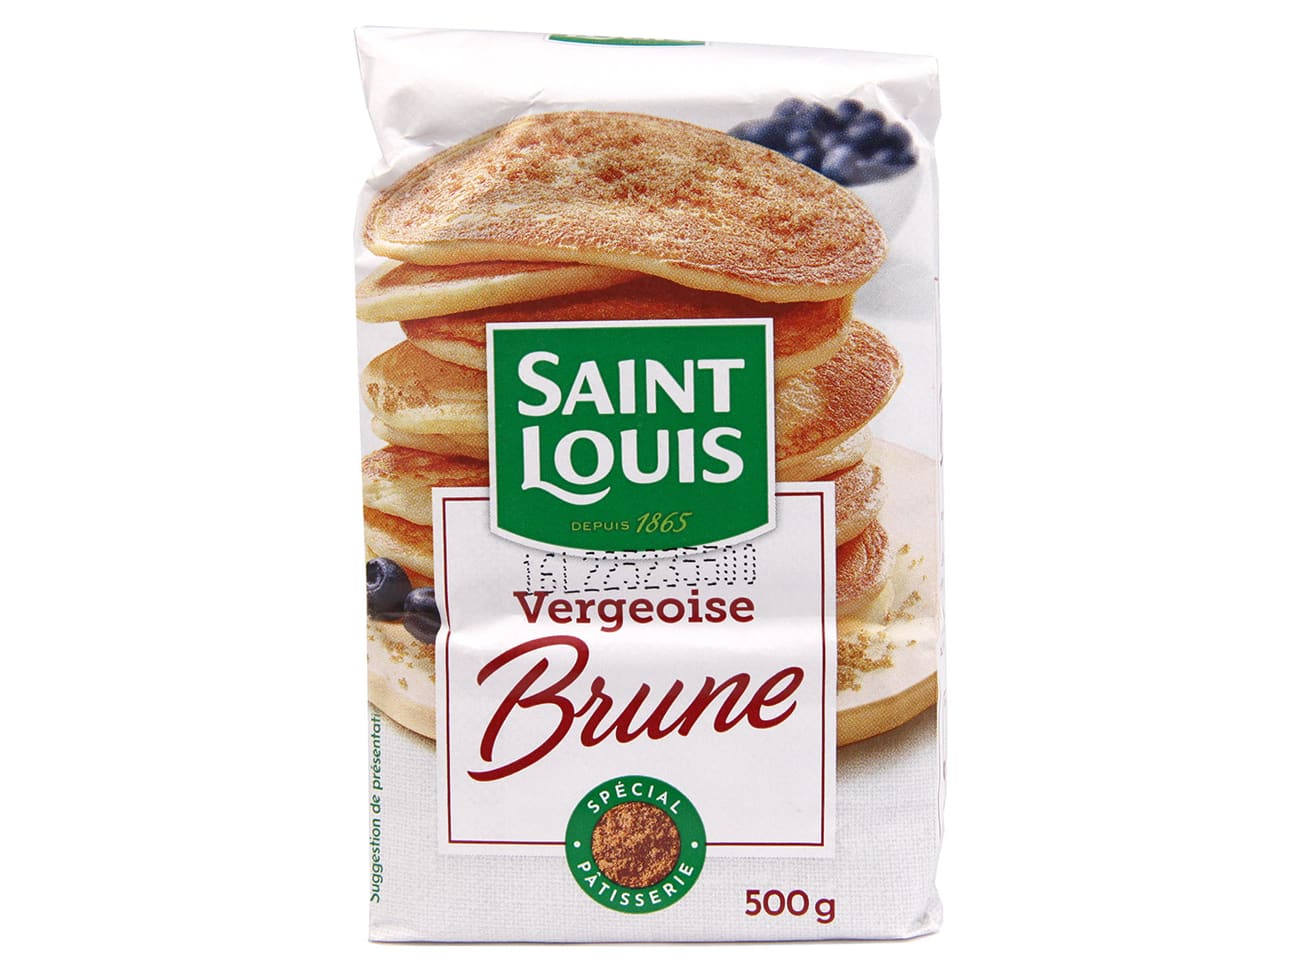  Saint Louis Vergeoise Brune Sucre 500g : Grocery & Gourmet Food